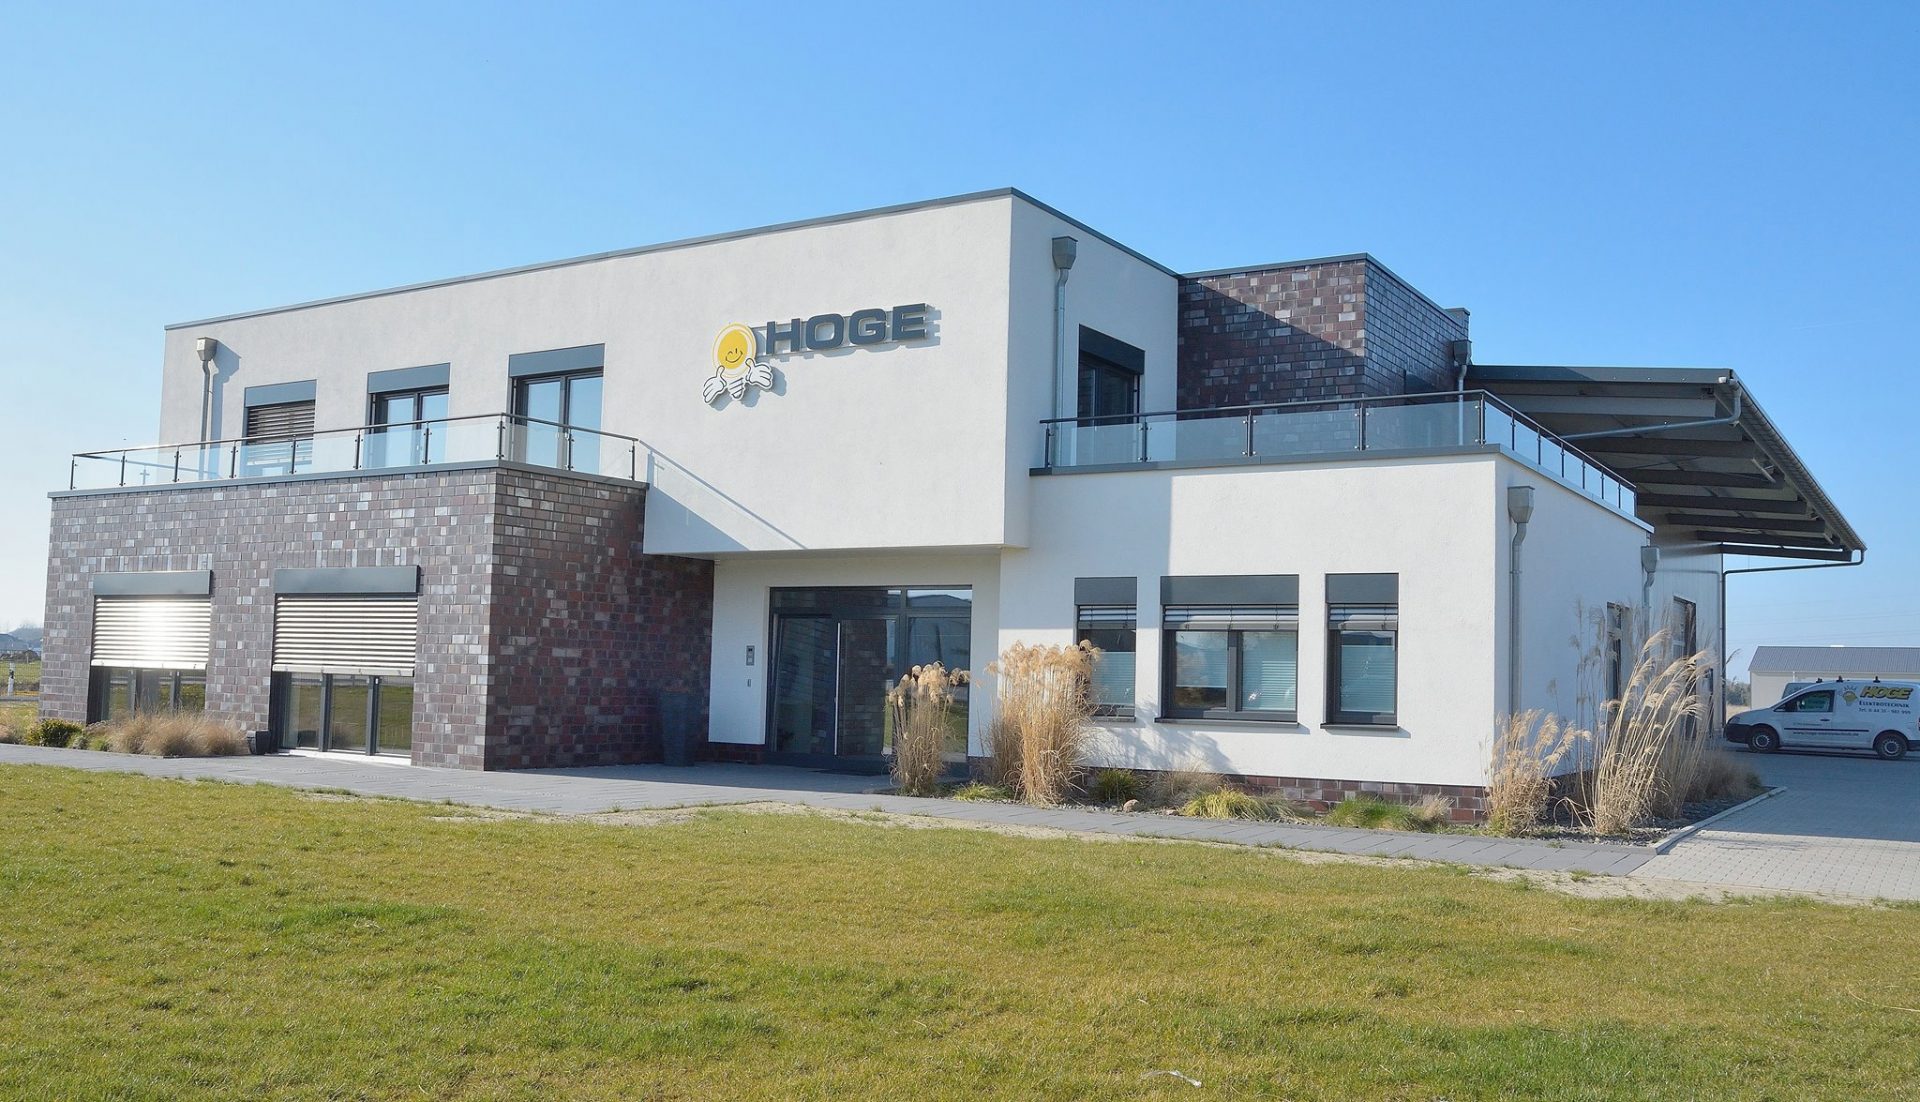 Hoge Systemtechnik – Elektrofachbetrieb in Wildeshausen (Bürogebäude)